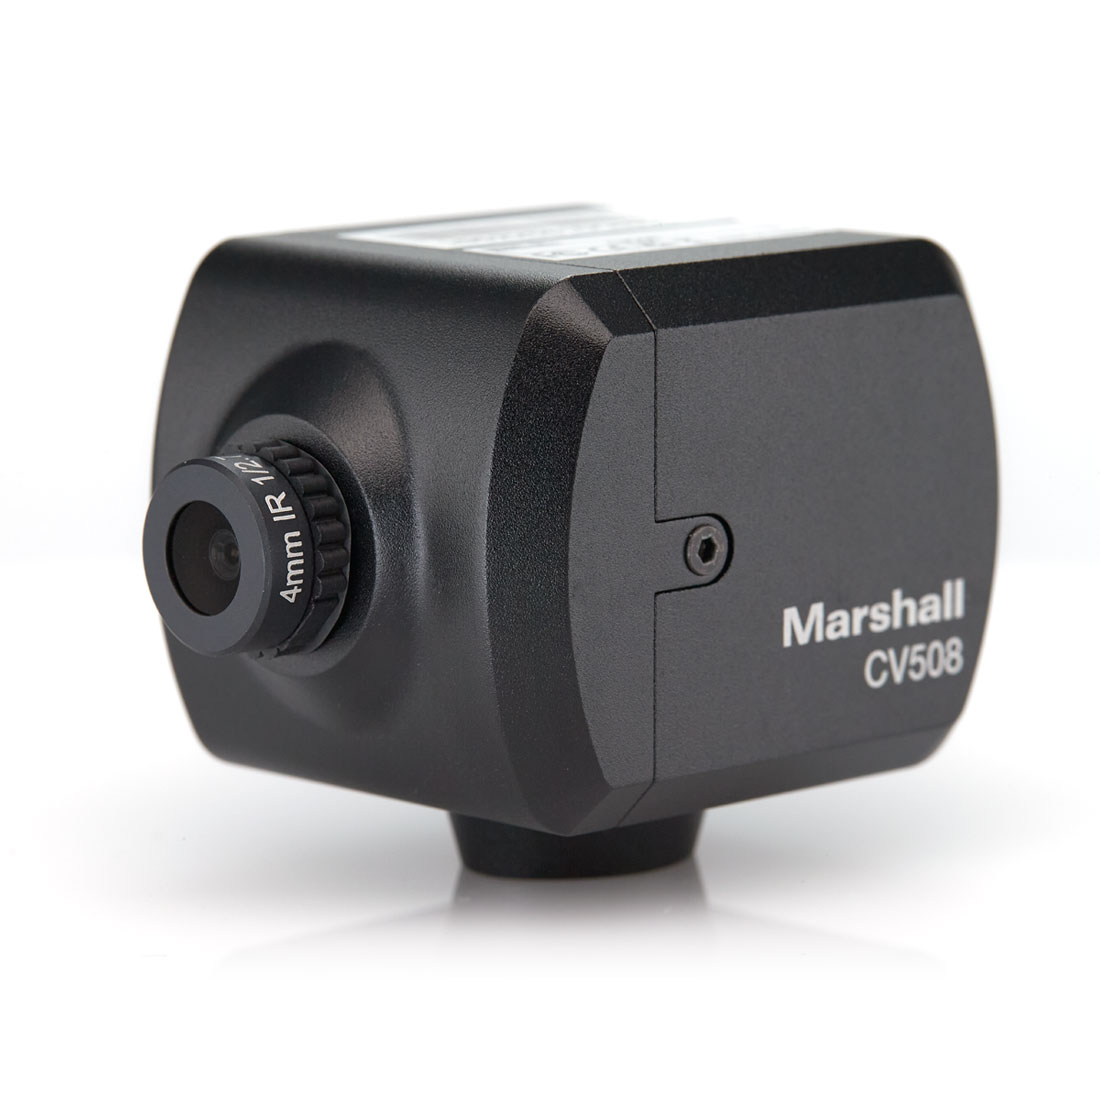 Marshall CV508